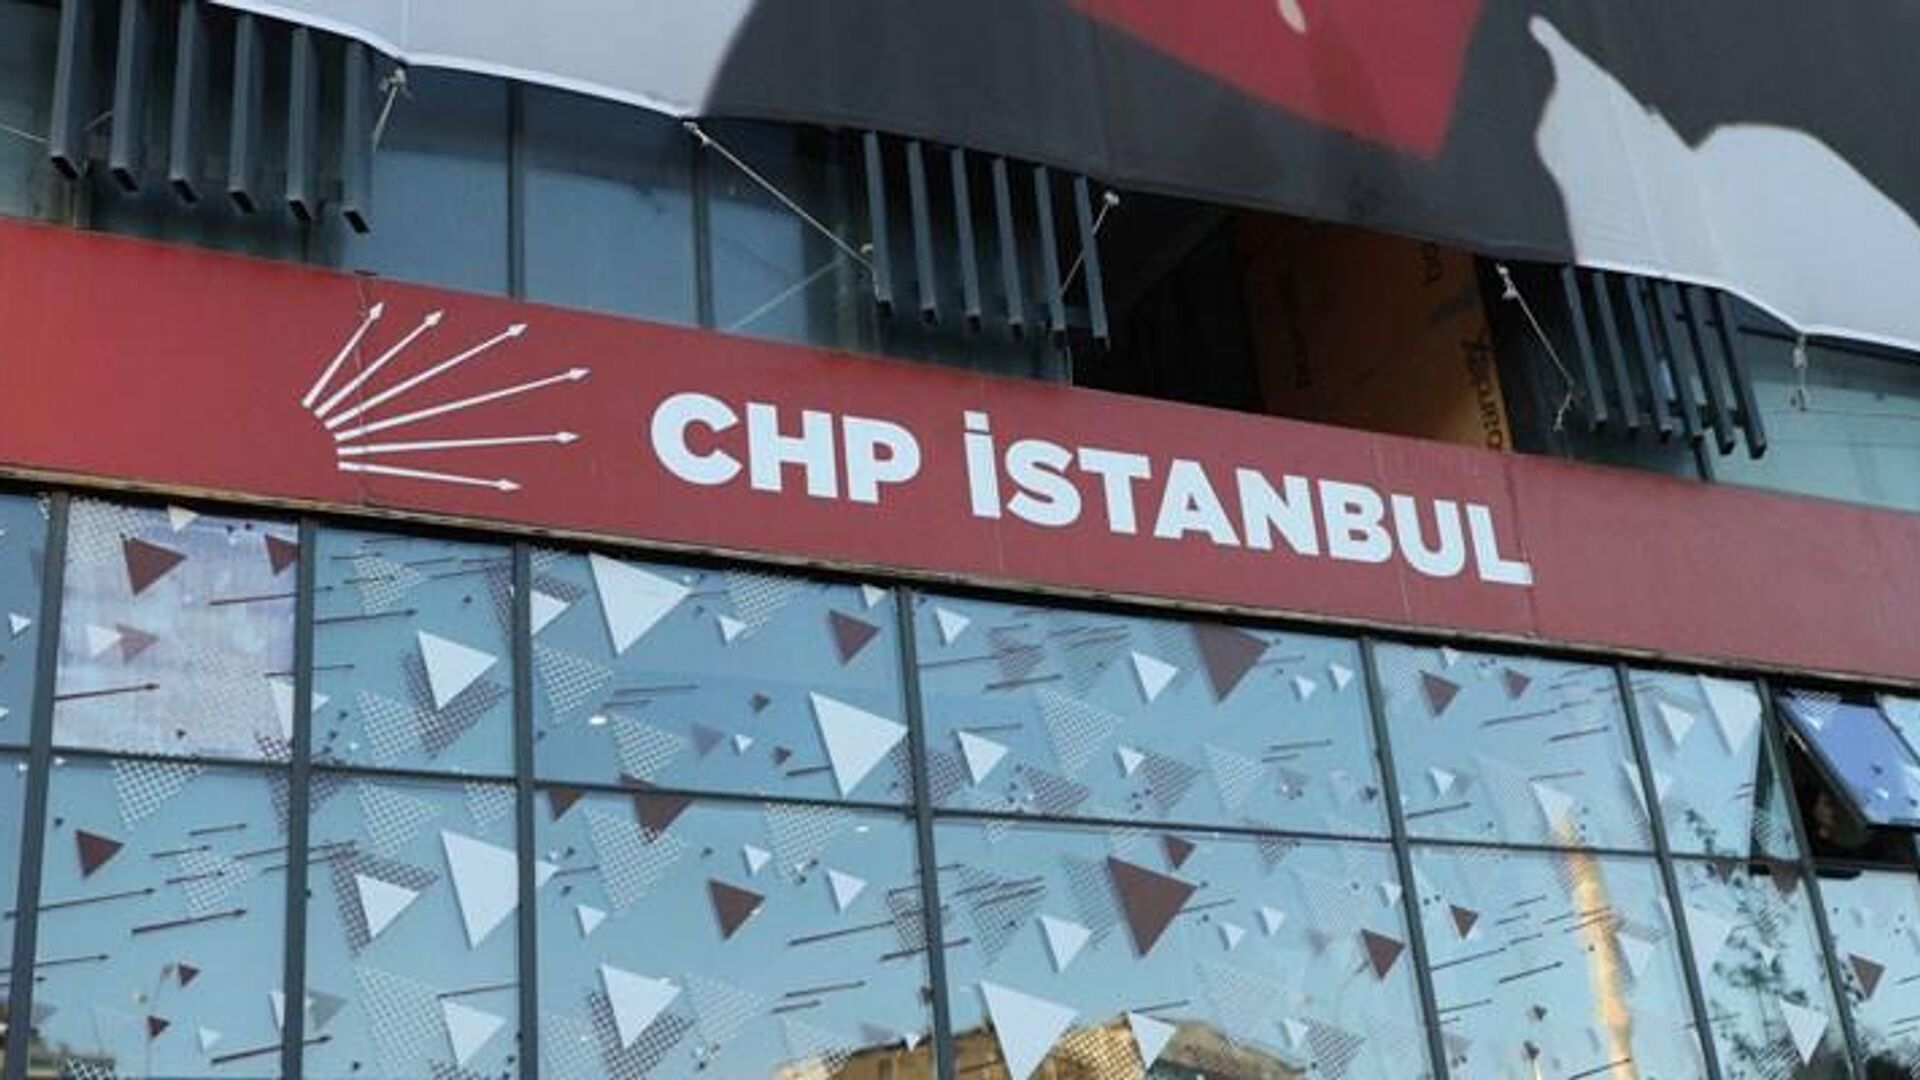 CHP İl Başkanlığında çekildiği iddia edilen görüntülere ilişkin soruşturma